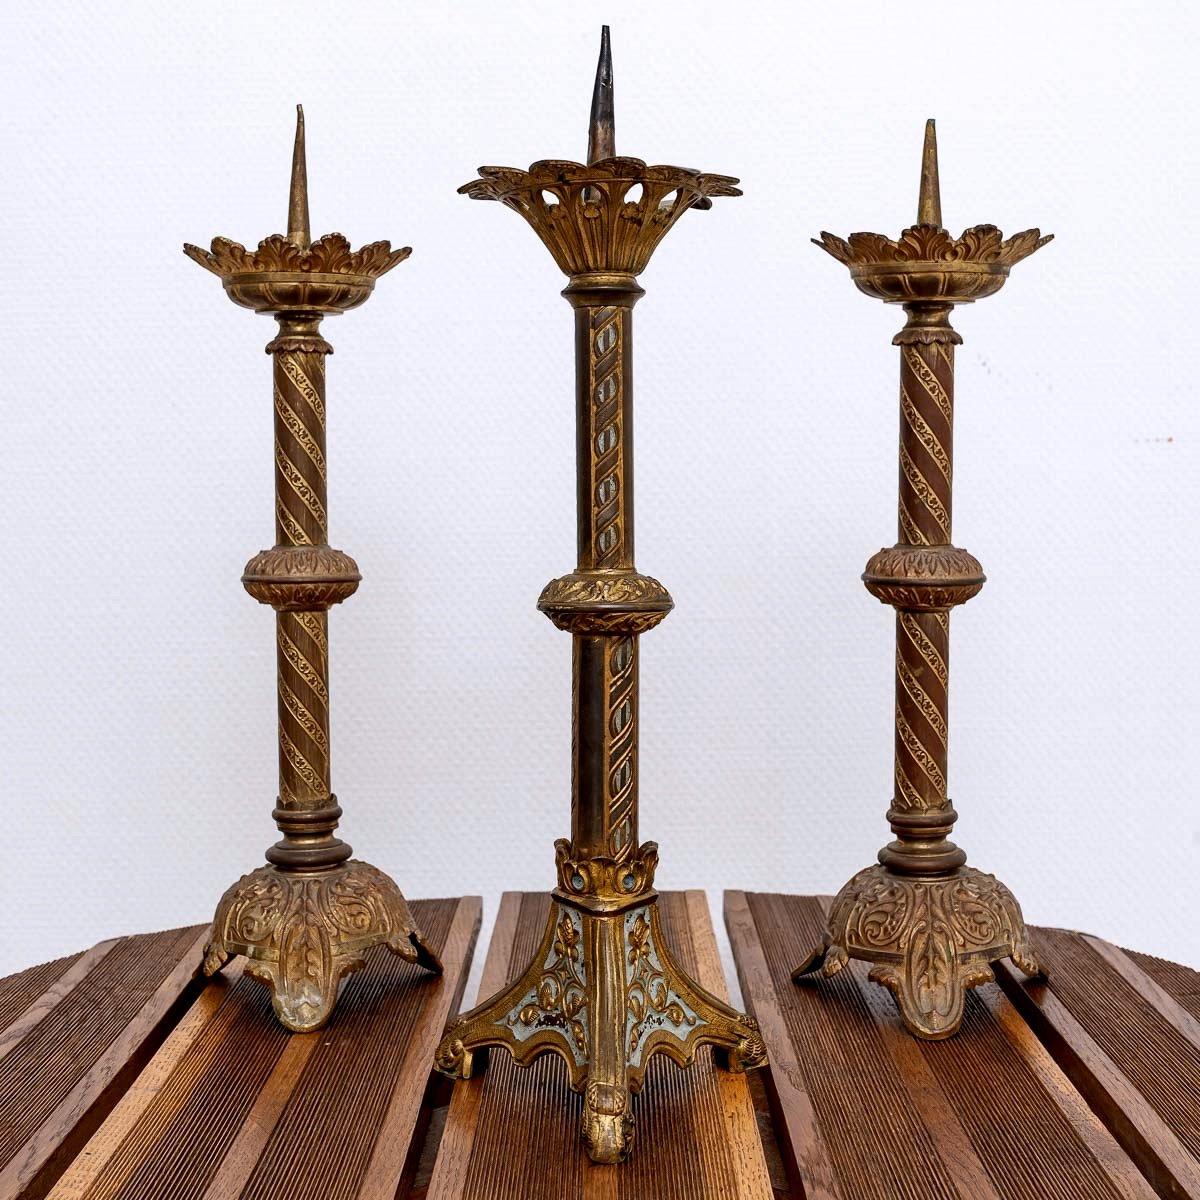 Ein reizvoller Satz von drei Altarleuchtern aus Bronze.
Ursprünglich standen Kerzenständer in der Regel auf drei Beinen, die mit einem Knoten und einem Docht versehen waren, um das Wachs zu halten.
In der Mitte dieses Bechers befindet sich ein Dorn,